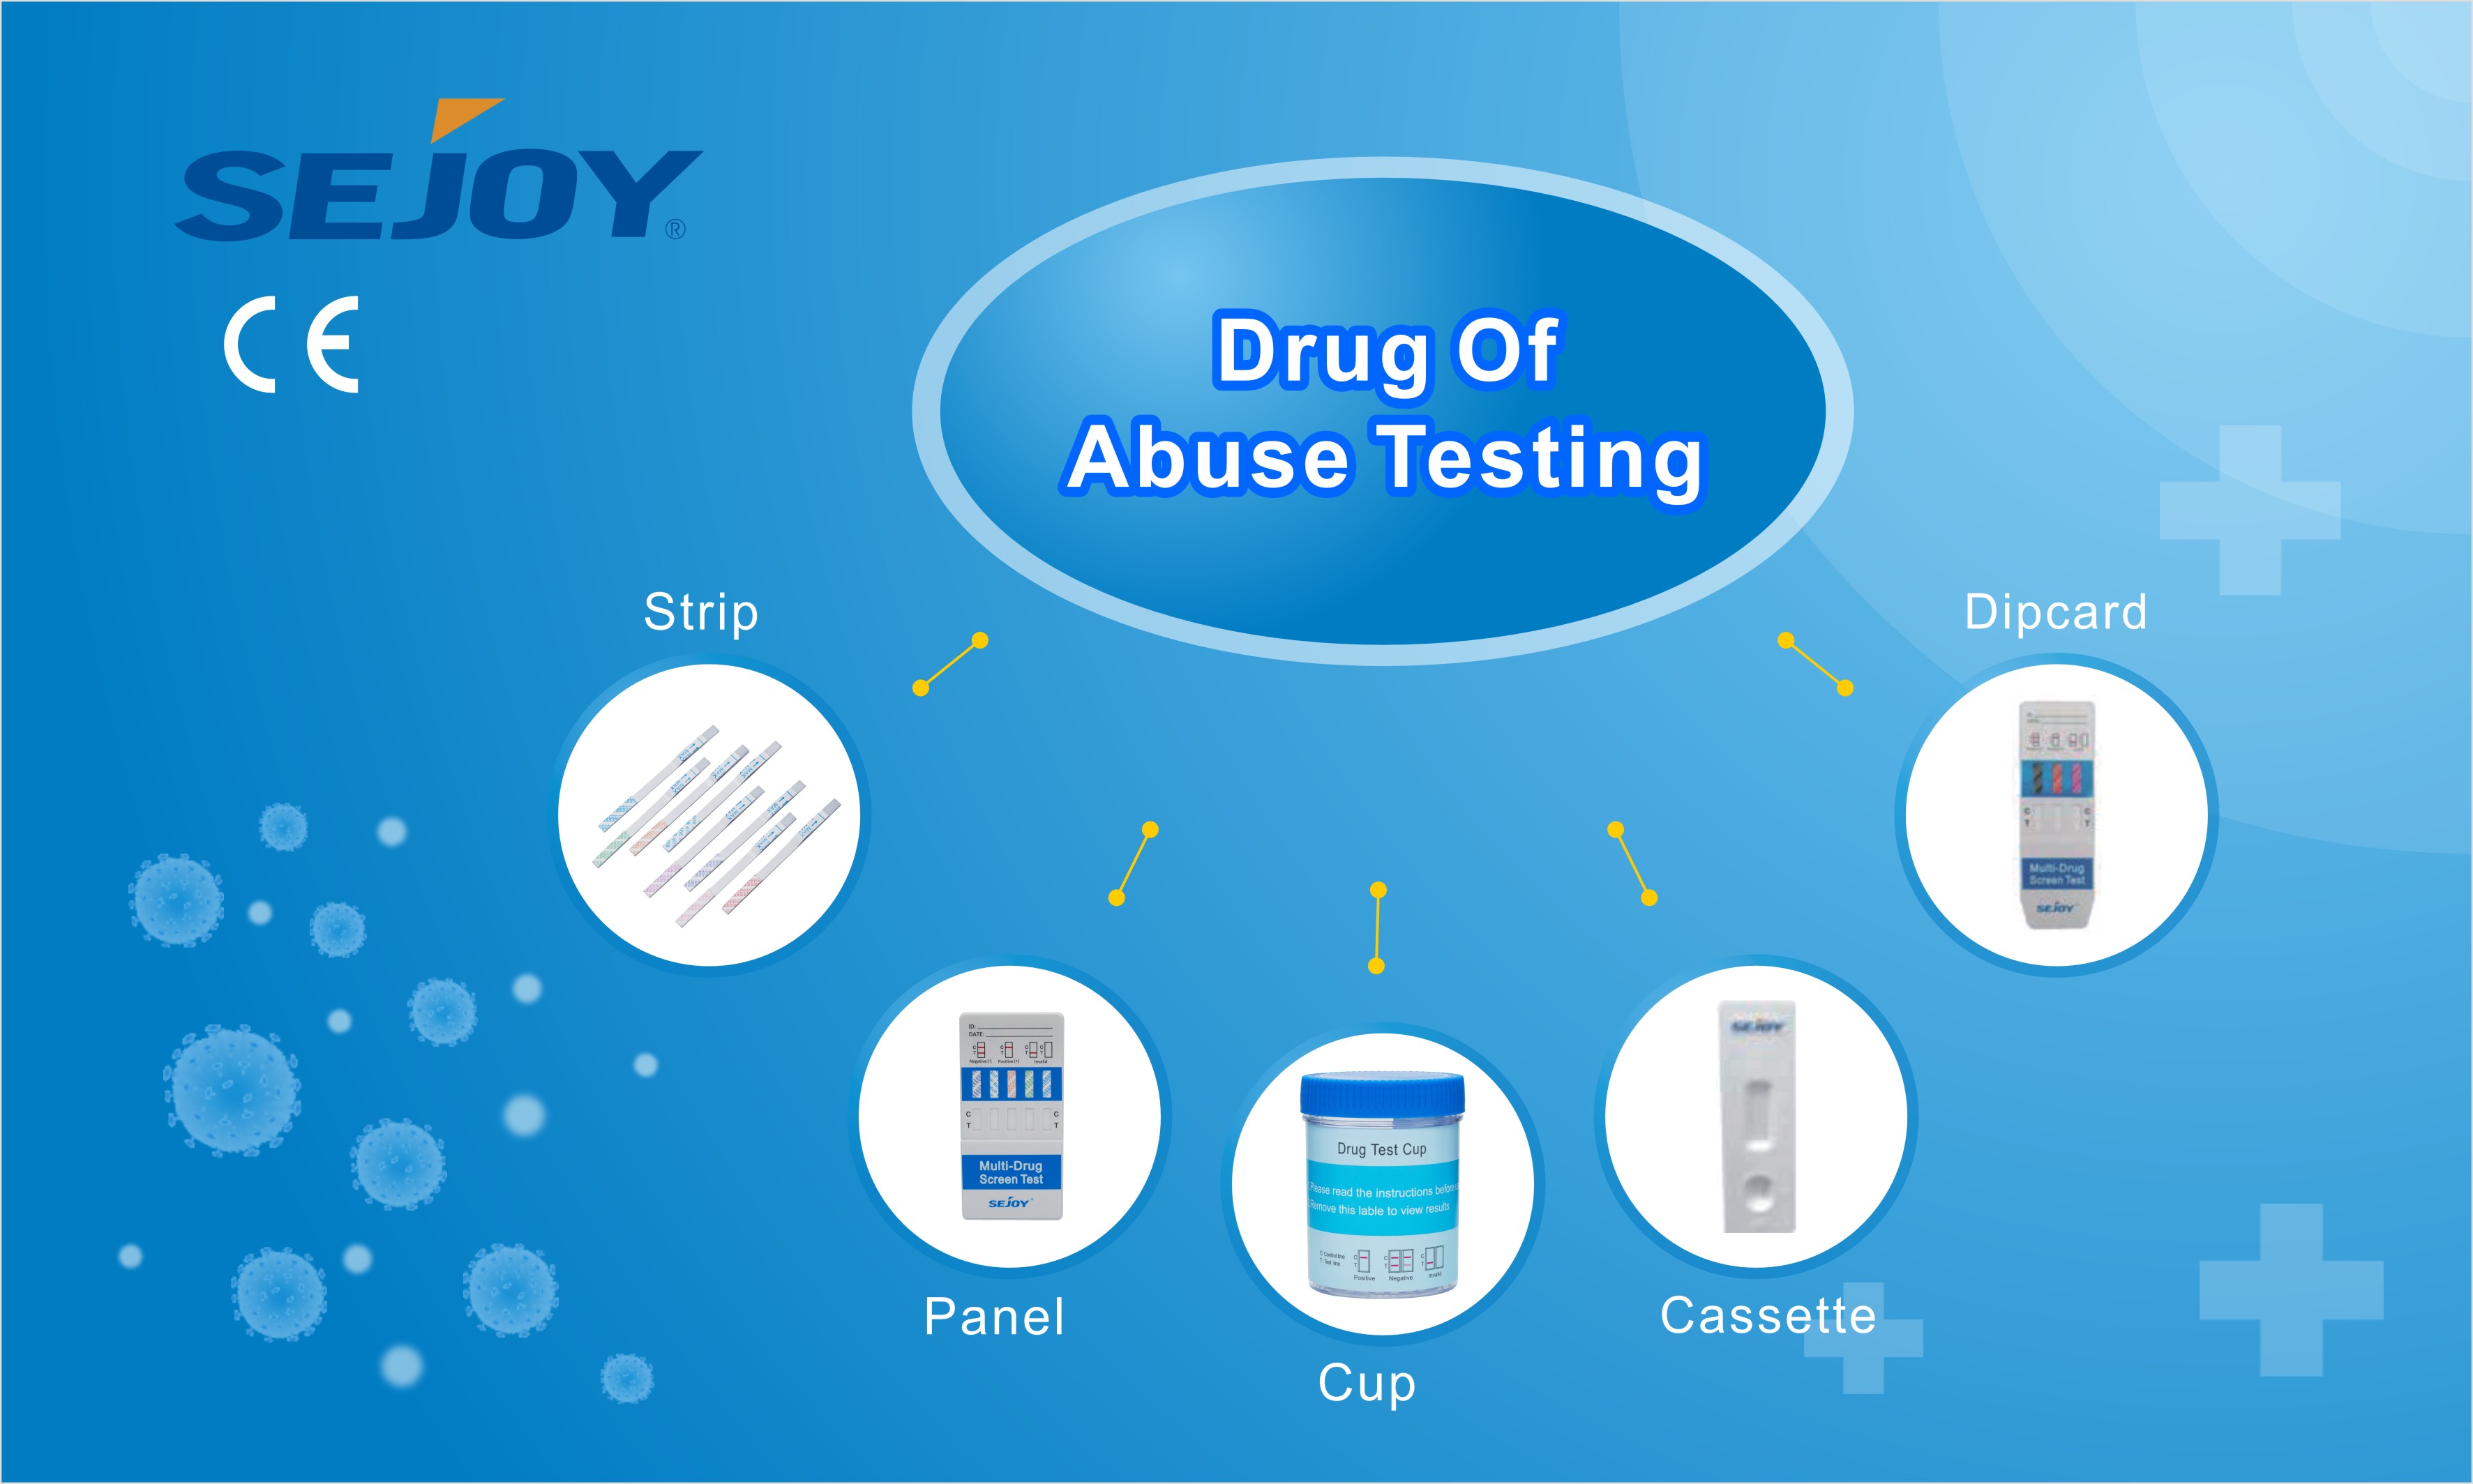 https://www.sejoy.com/drug-of-abuse-test-product/